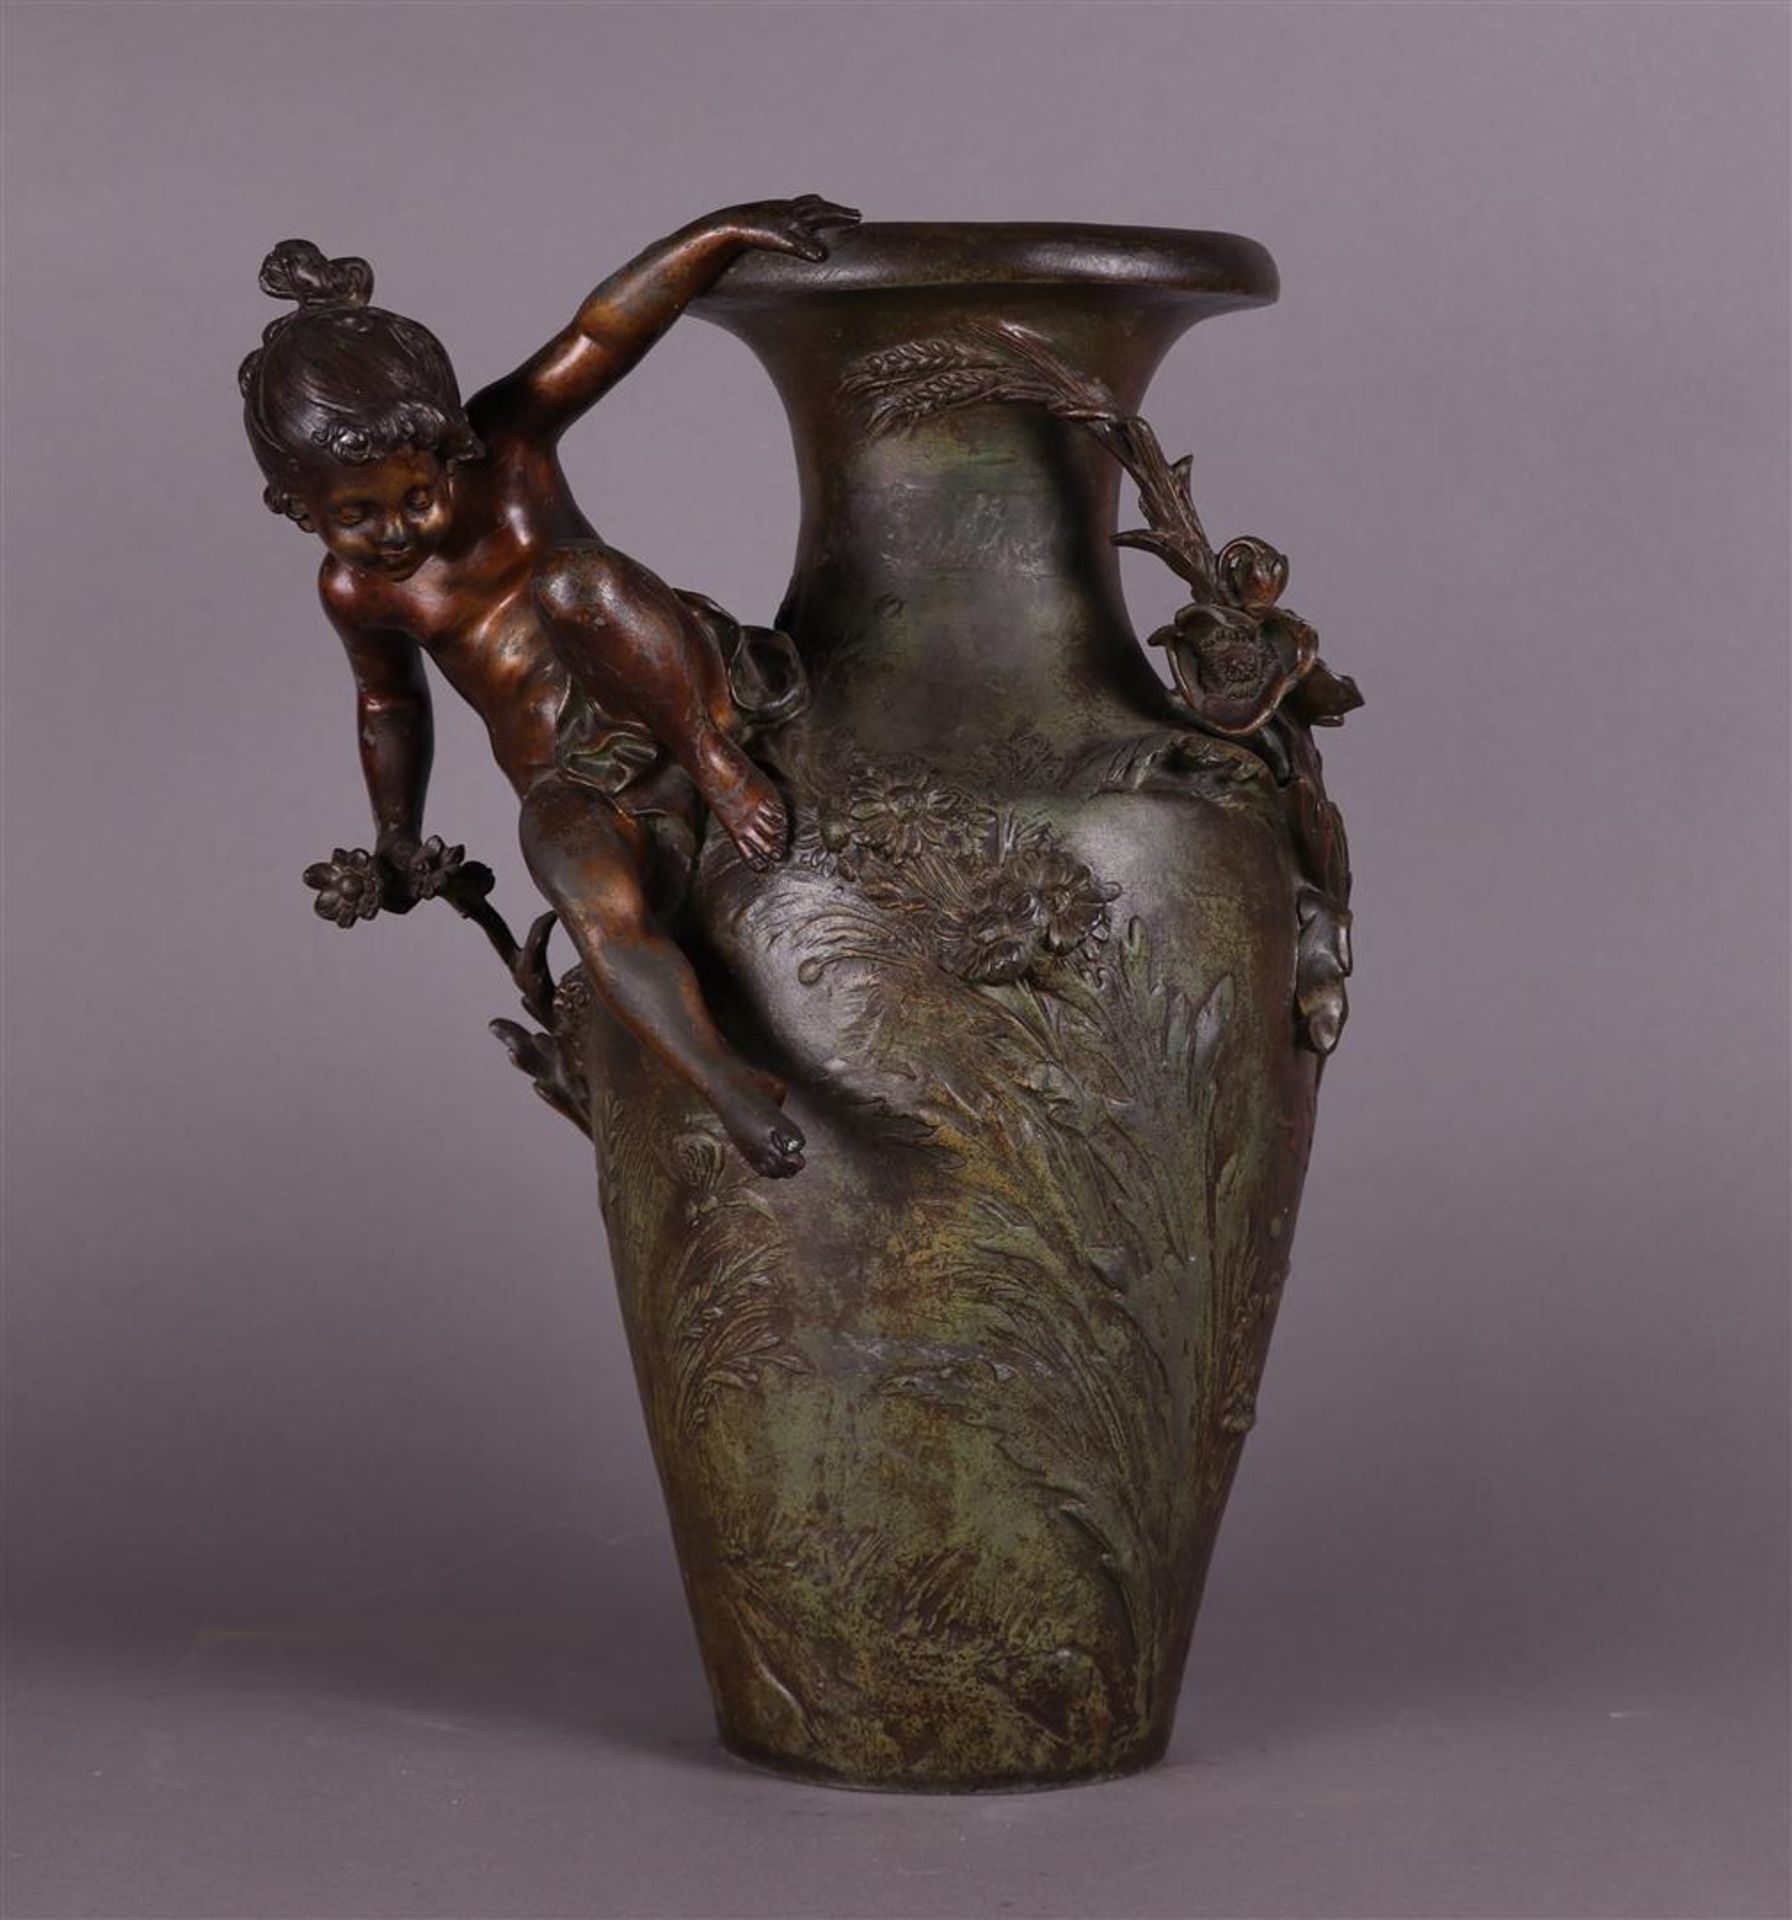 An Art Nouveau vase, after Auguste Moreau (1834 - 1917), signed "Aug. Moreau", 